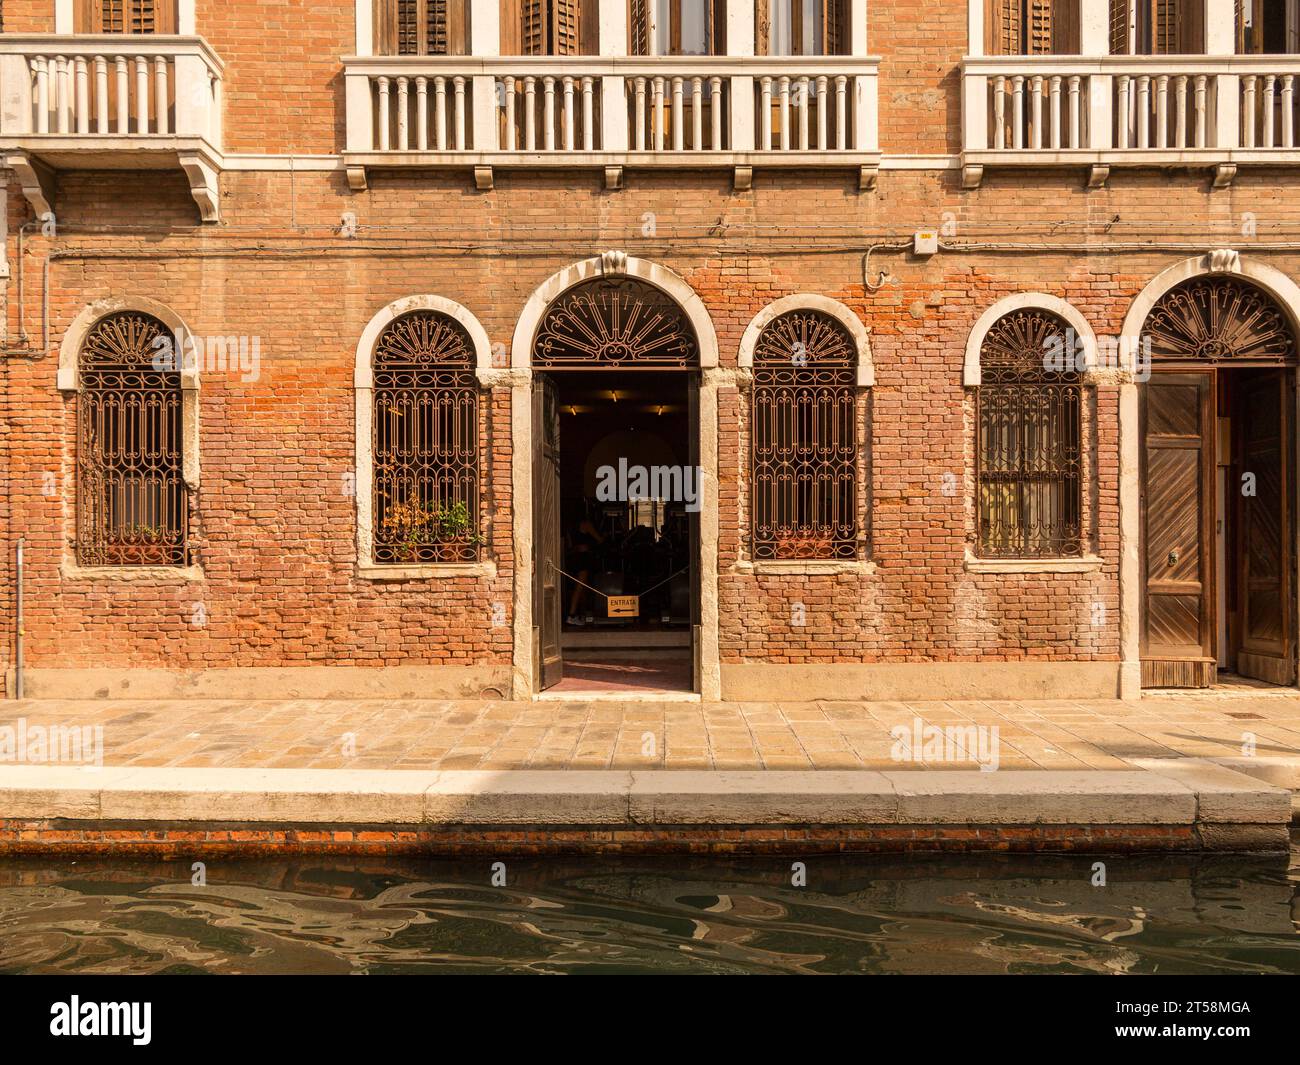 Fassade einer venezianischen Villa am Rande eines Kanals. Die Fenster haben schmiedeeiserne Gitter. Wir können die Balkone oben sehen. Stockfoto